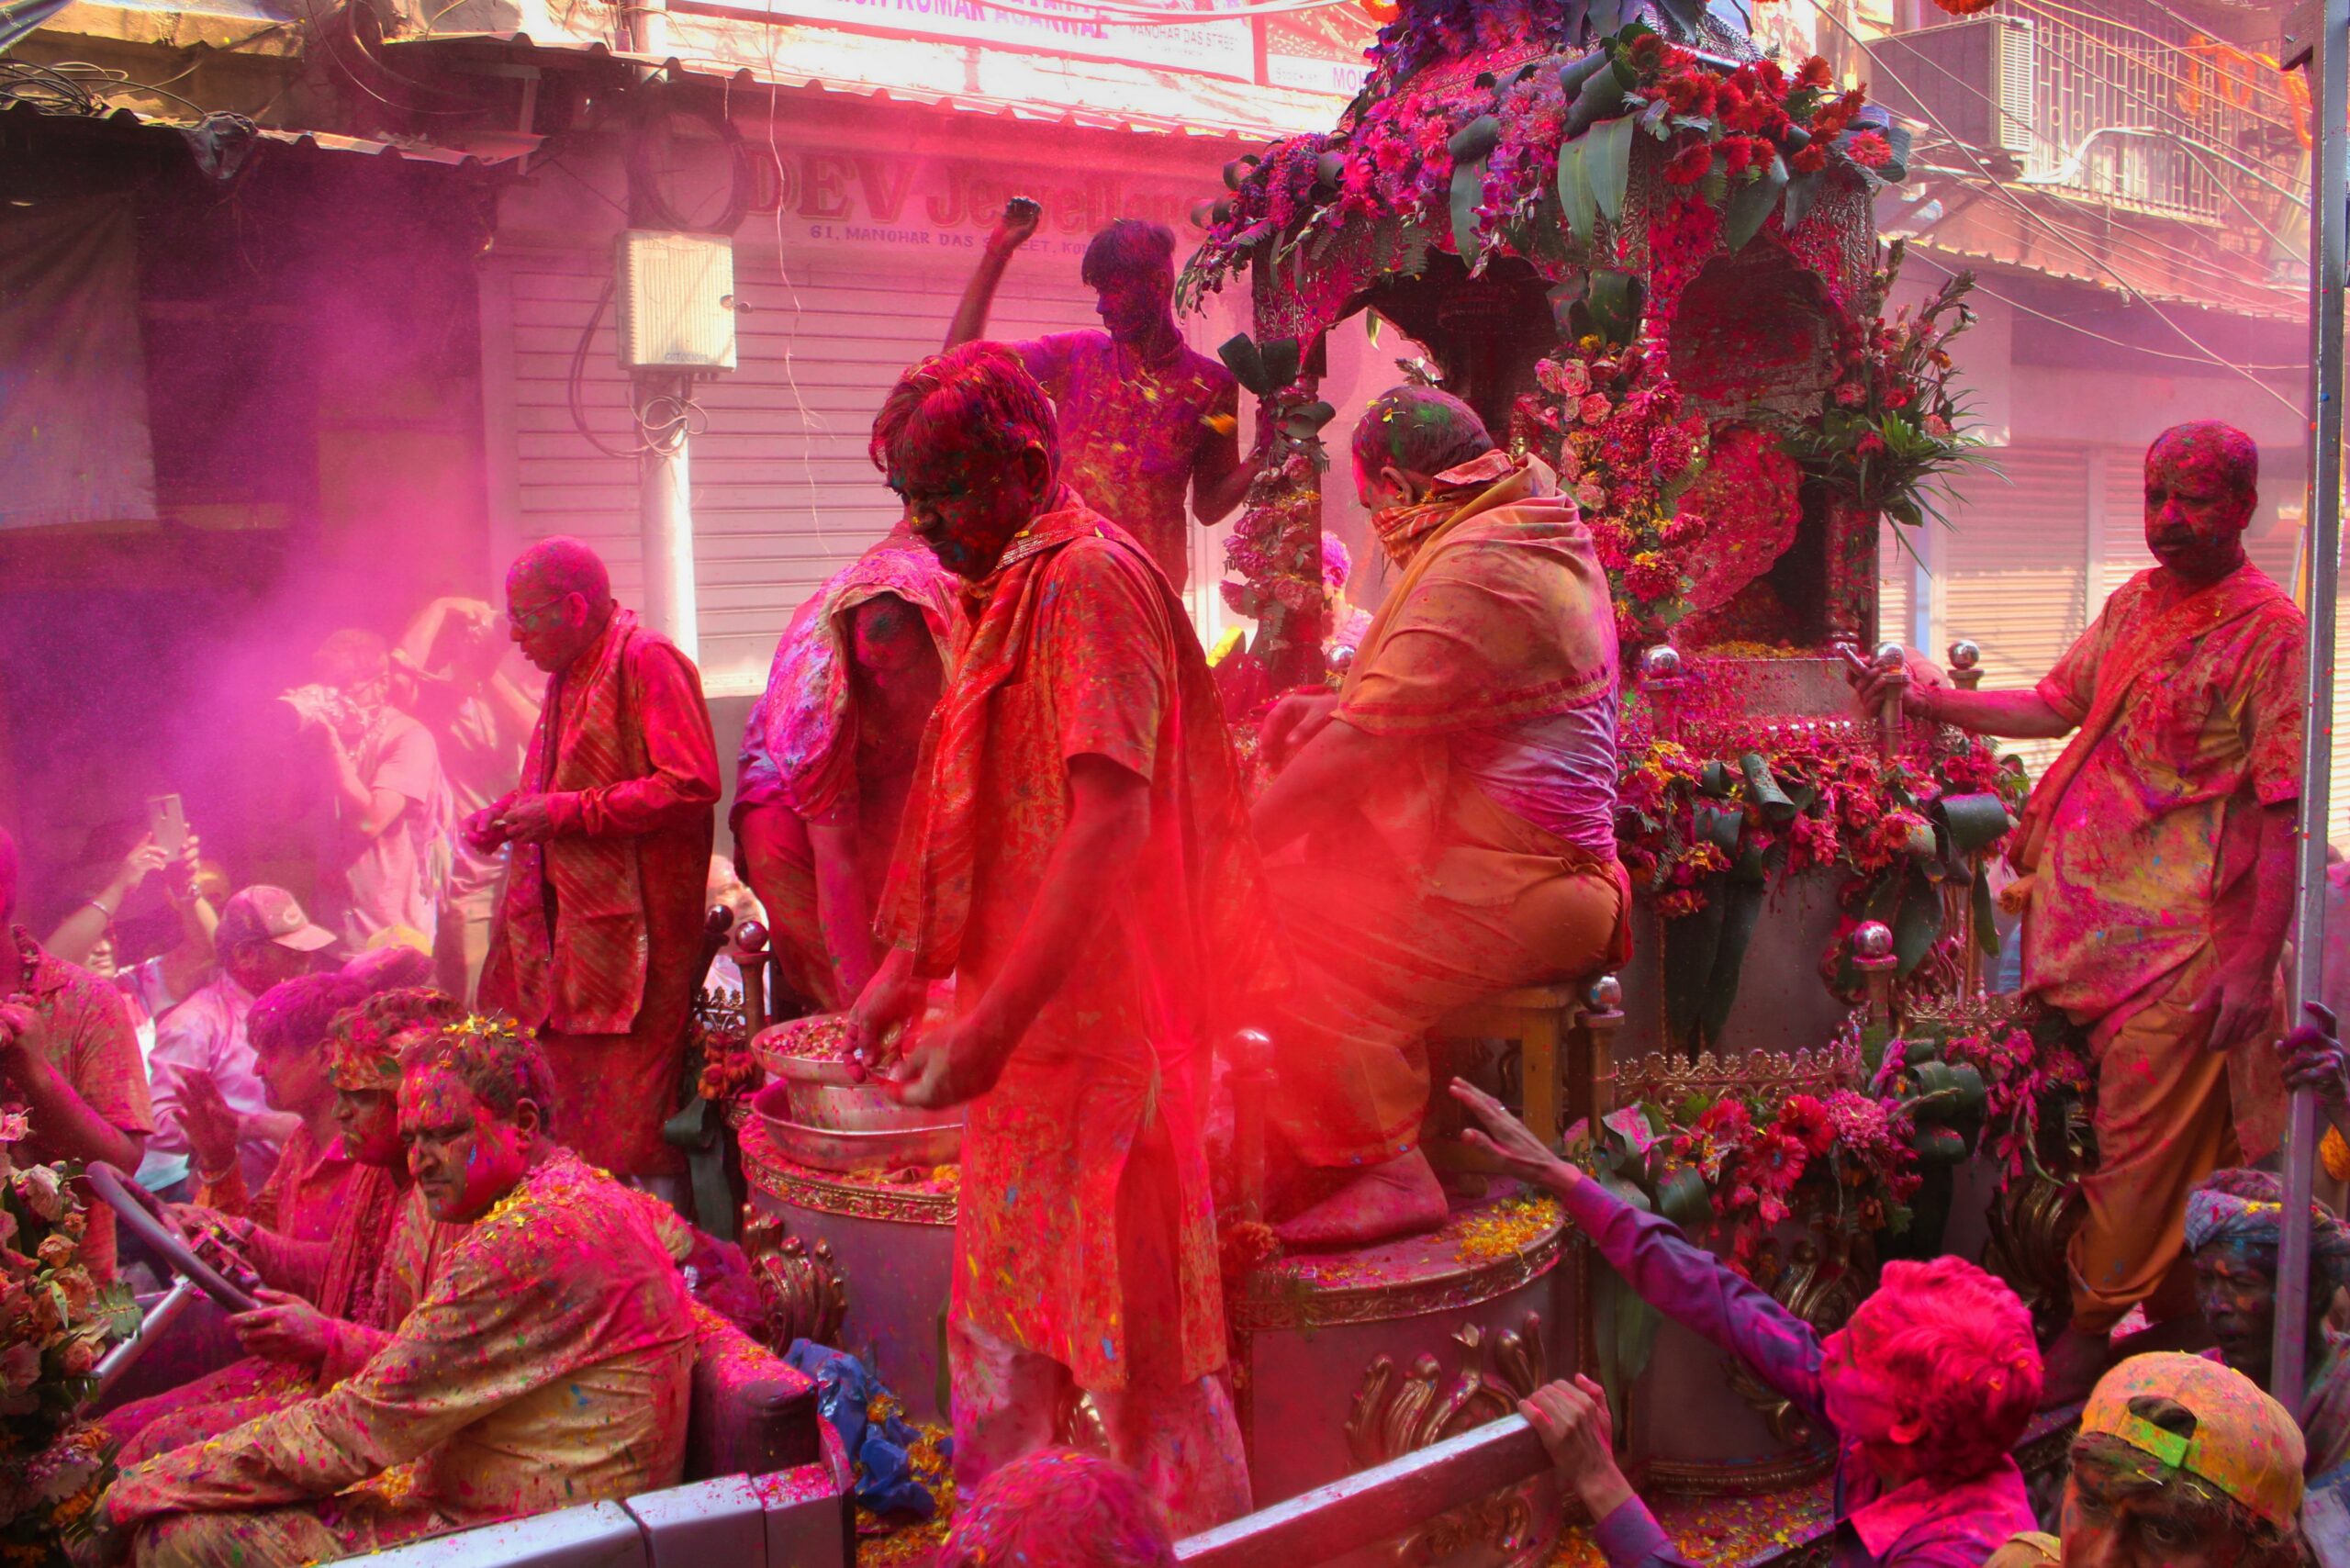 The Holi festival in India